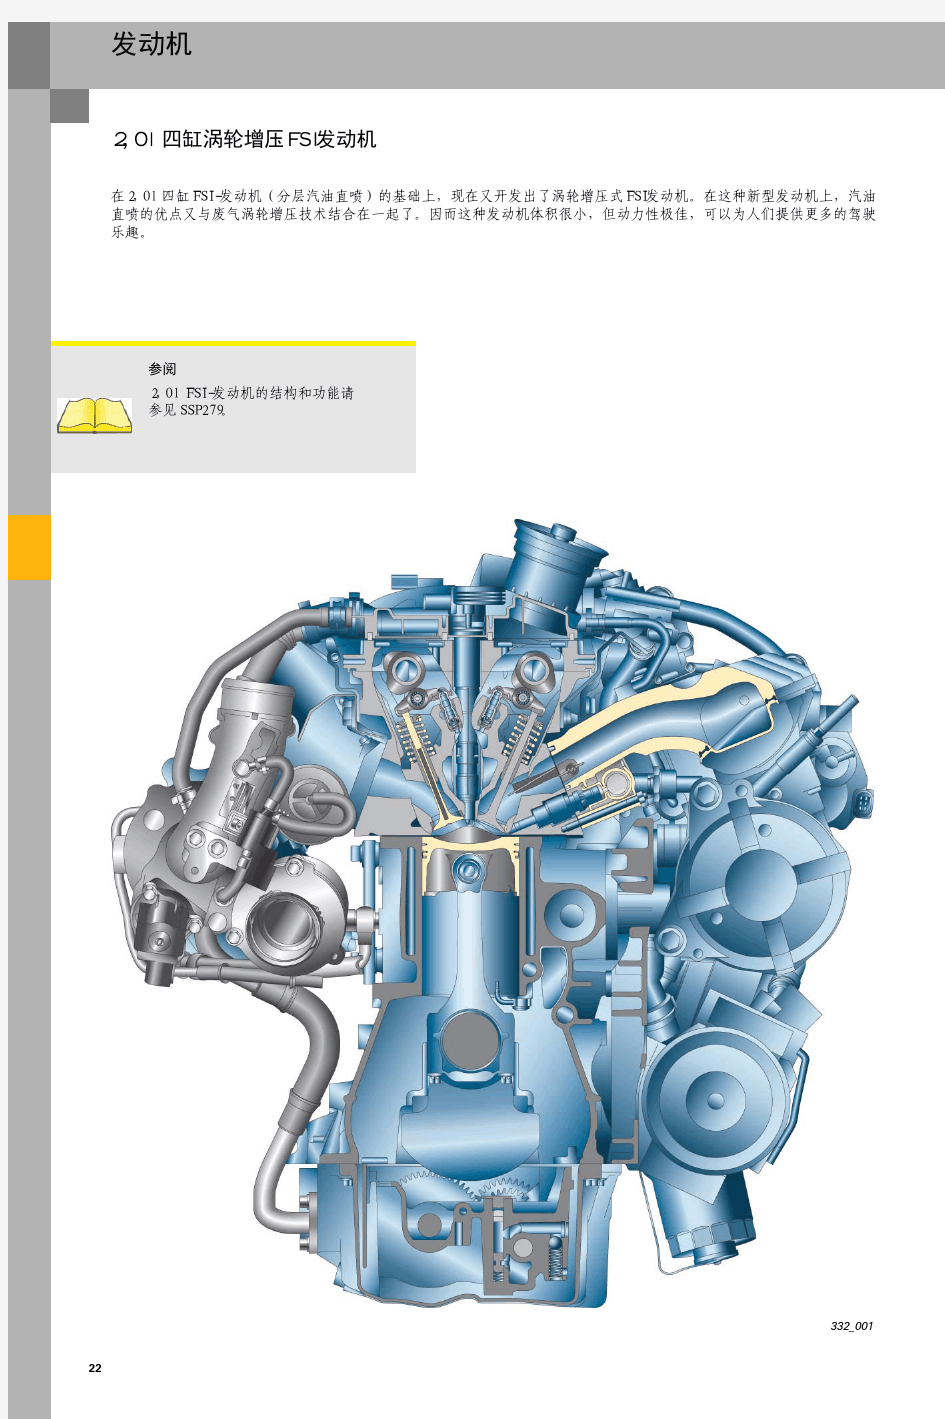 四缸涡轮增压FSI发动机自学手册[1]